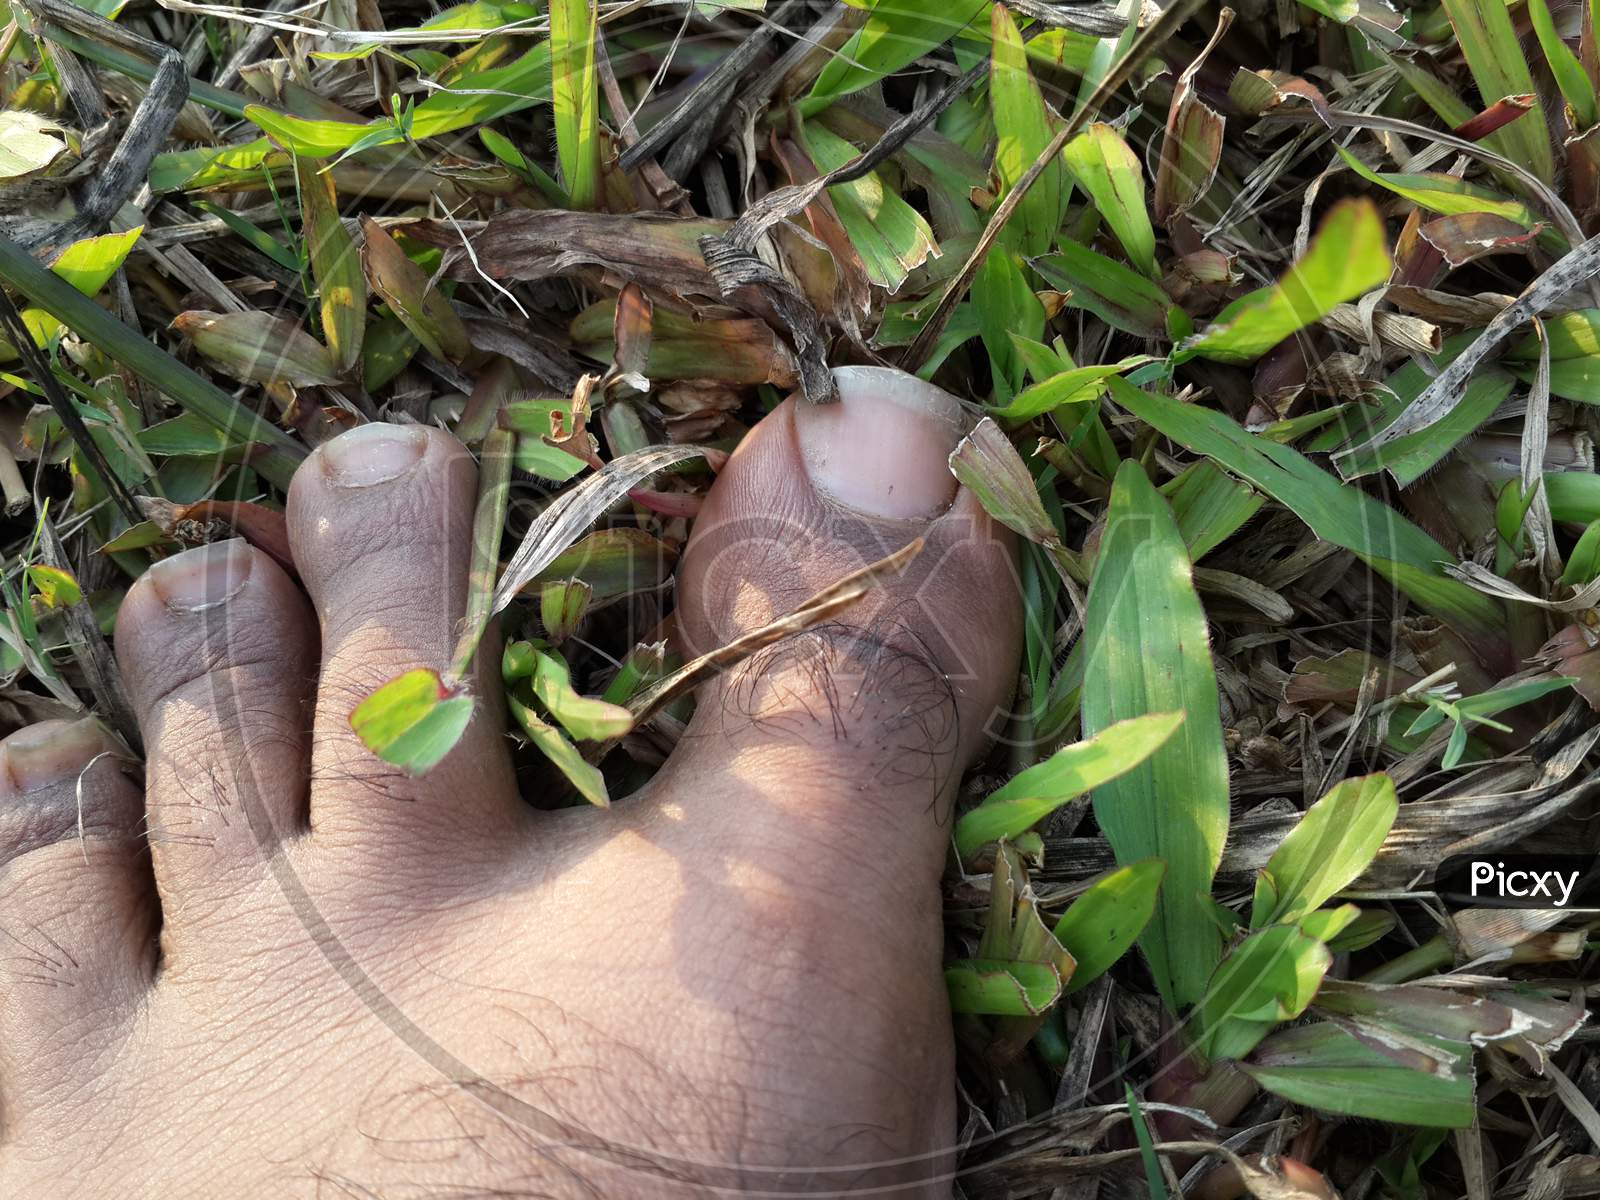 Barefoot on grass closeup shot